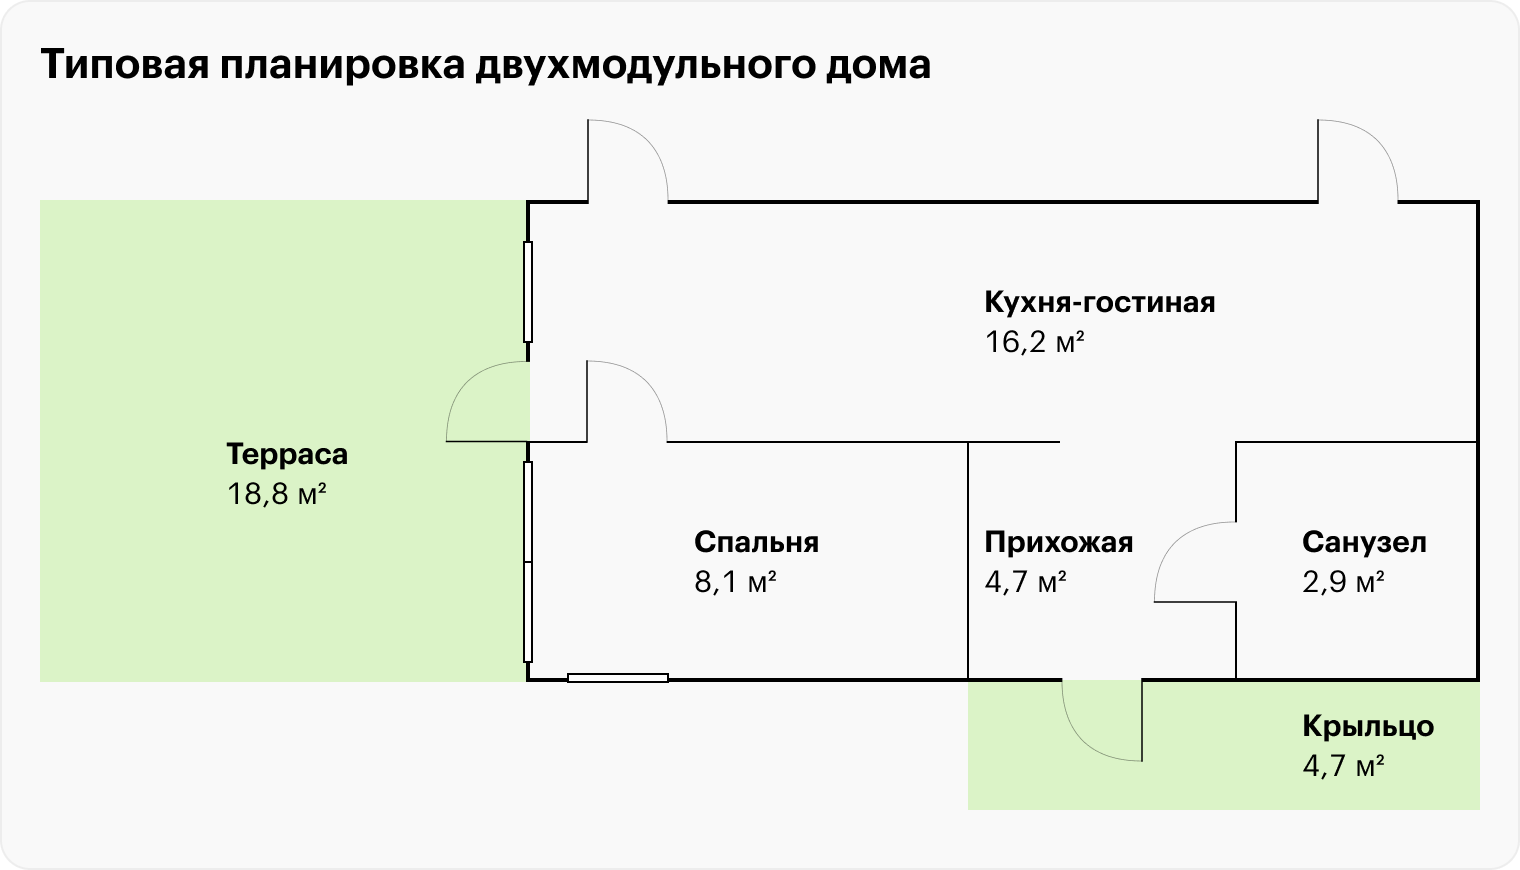 Дом из двух модулей обычно напоминает компактную евродвушку: кухня-гостиная, санузел, небольшая спальня